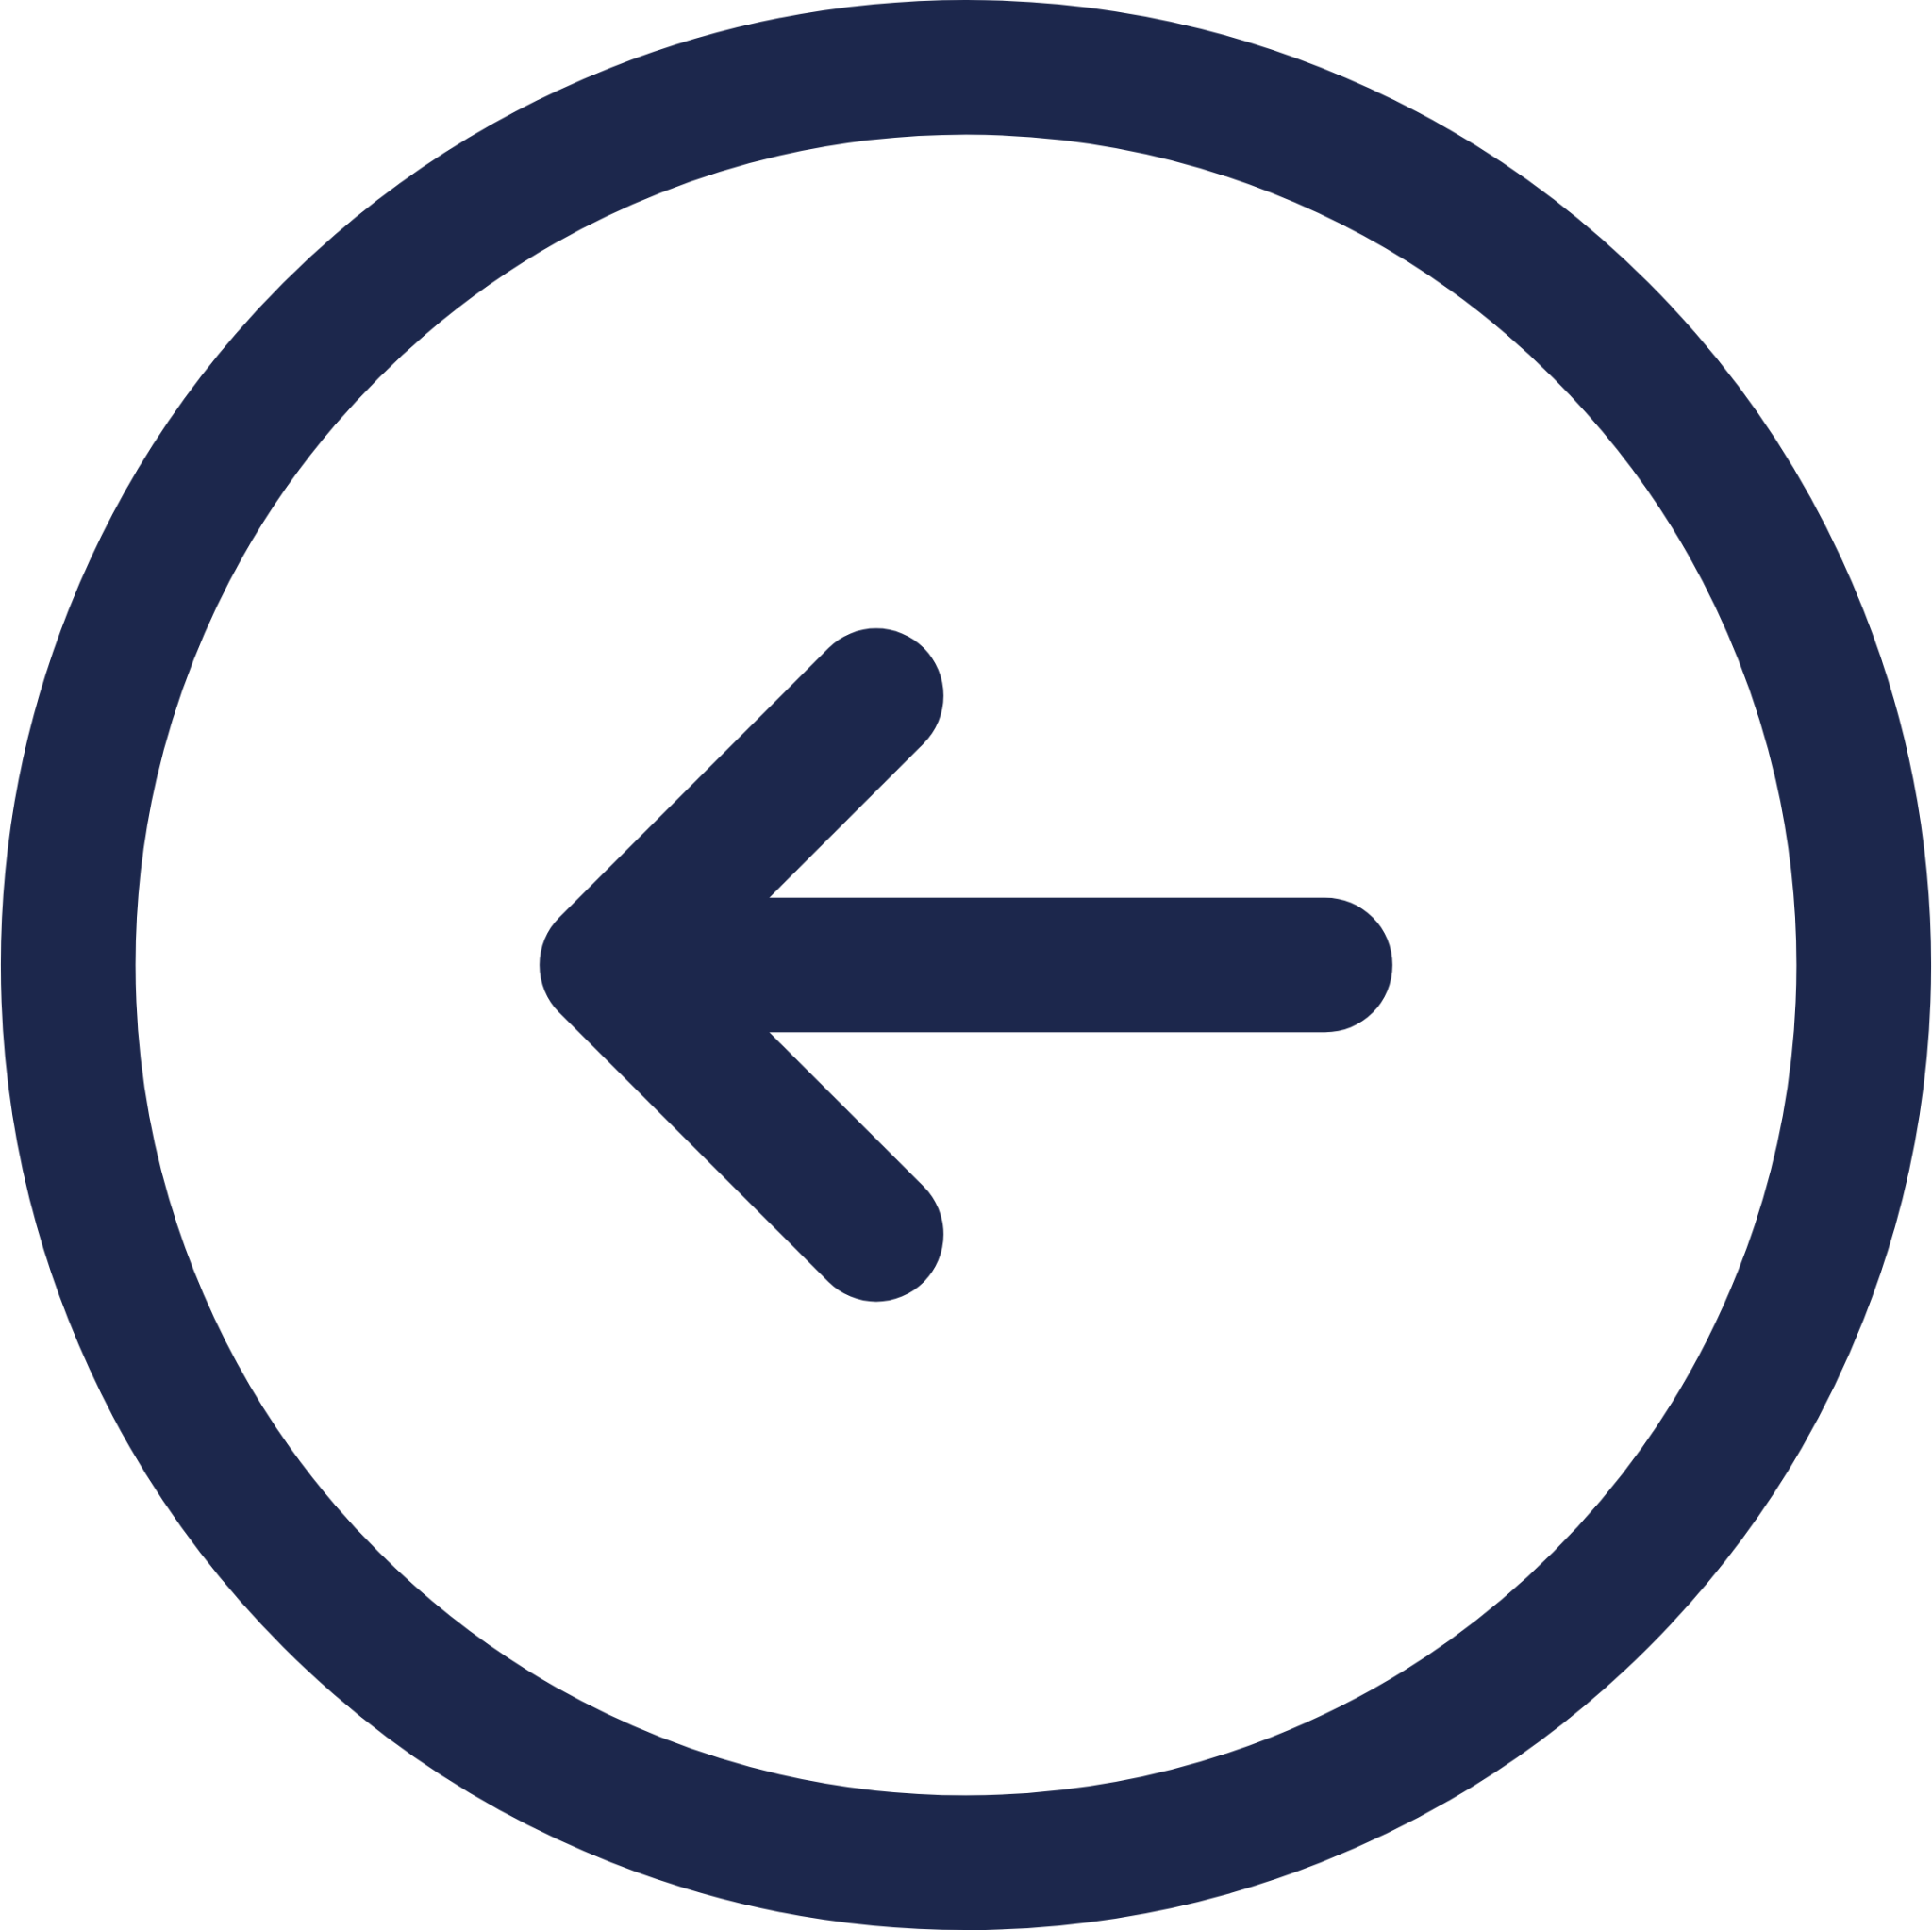 Round Arrow Left icon